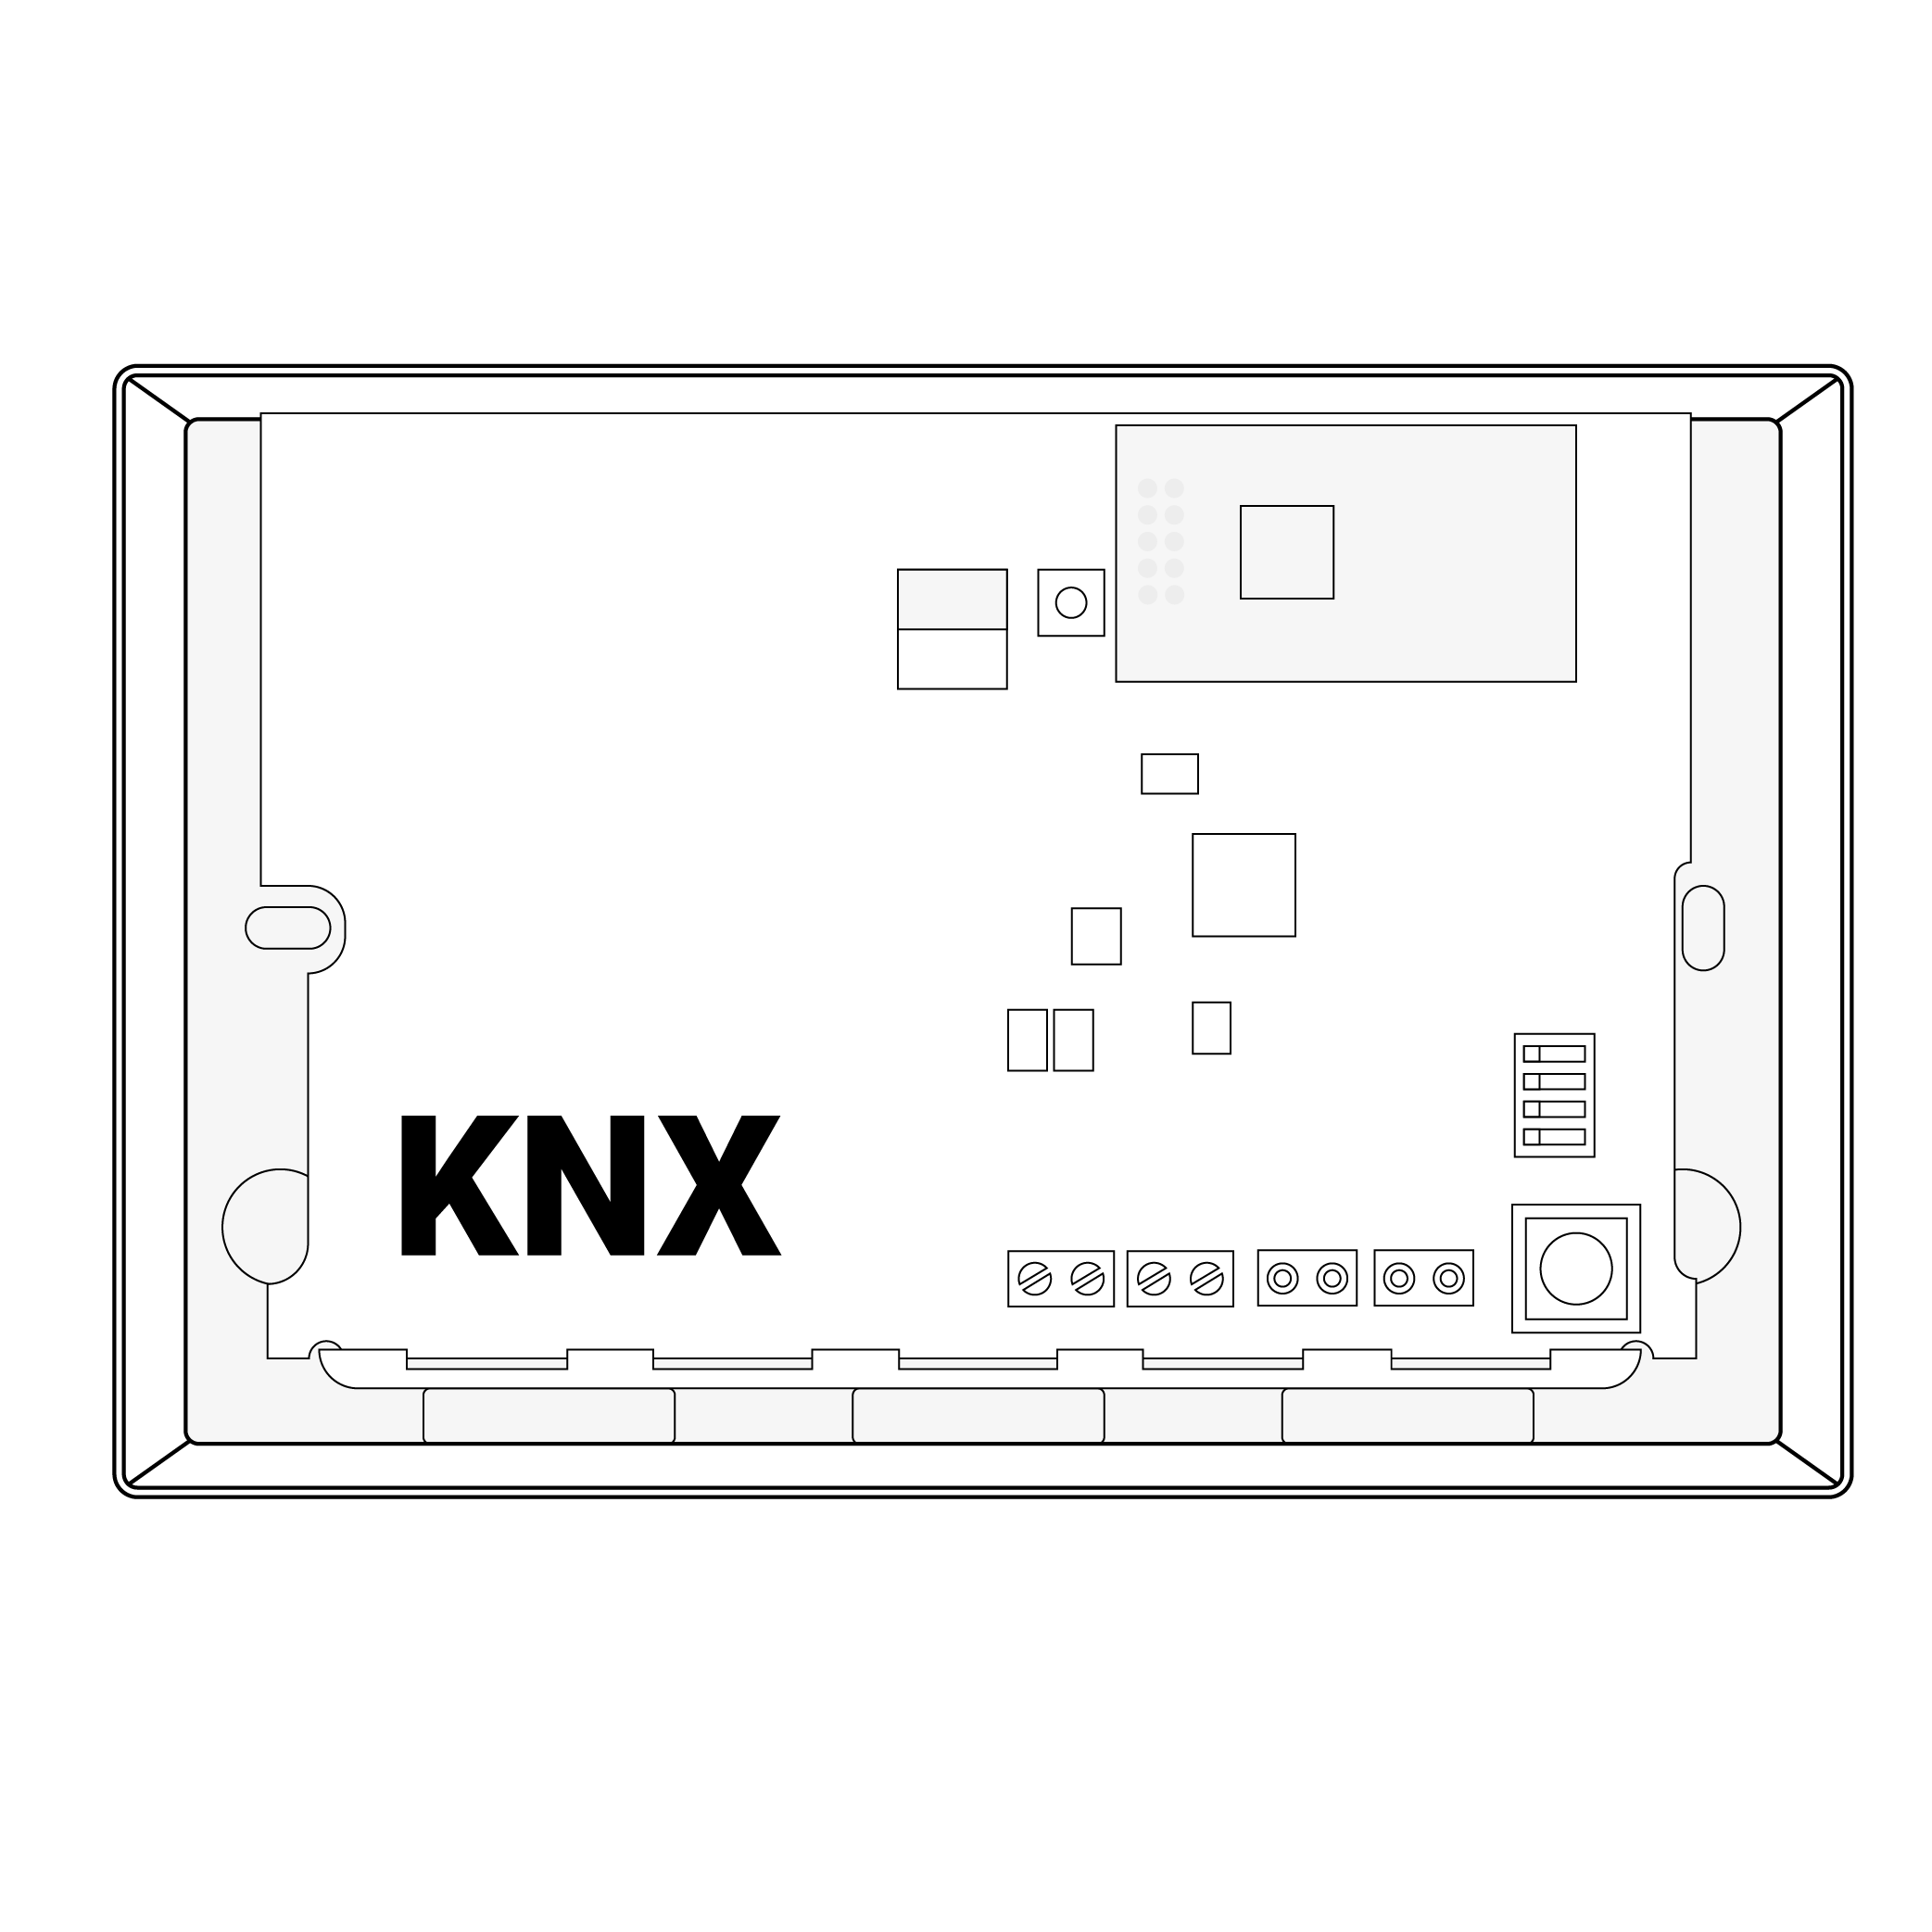 8. UNii KNX module